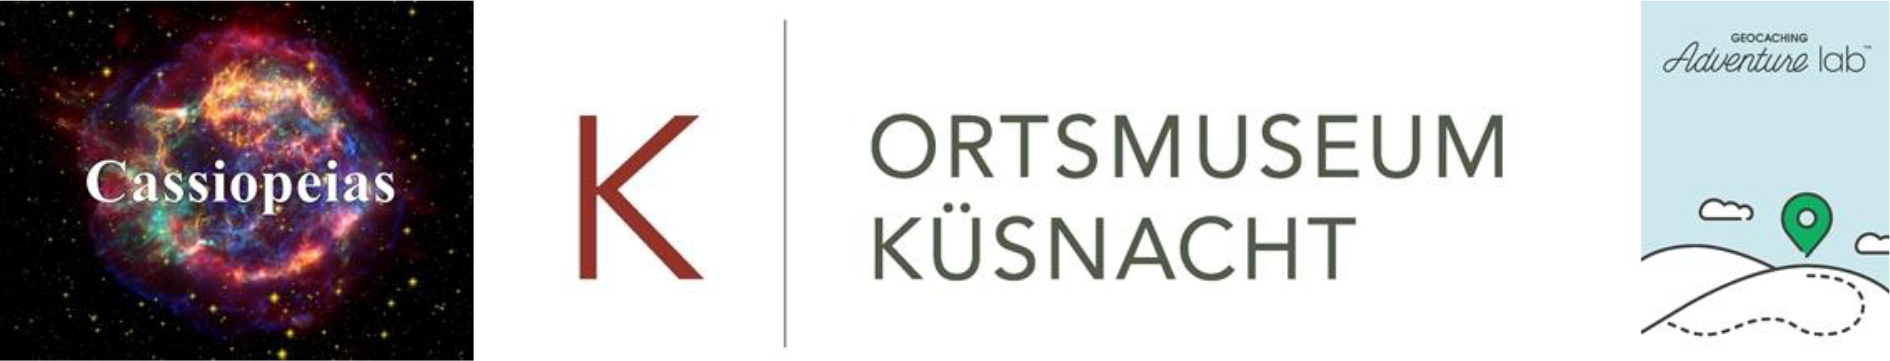 Cassiopeias-Produktion, Ortsmusem Küsnacht